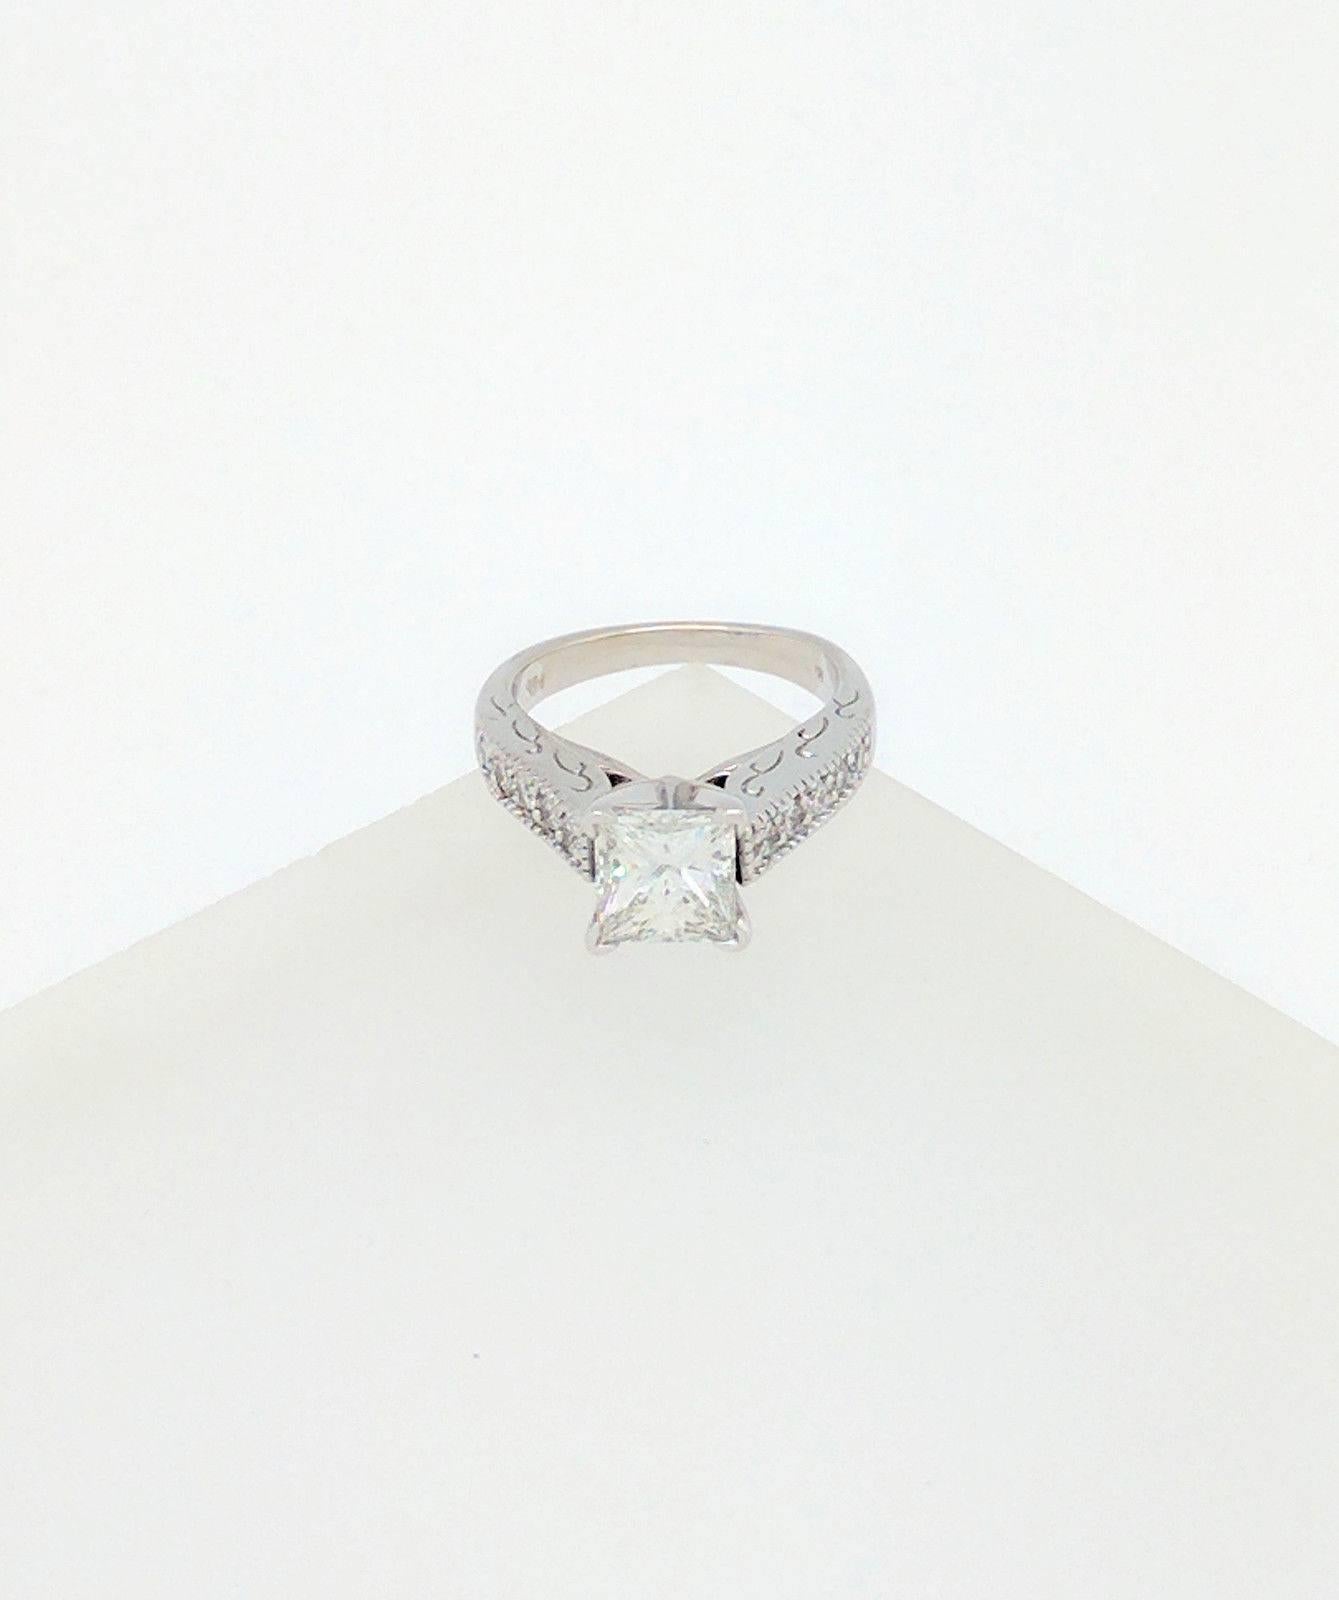 Women's or Men's 14 Karat White Gold 1.85 Carat Princess Cut Diamond Engagement Ring VS2/H